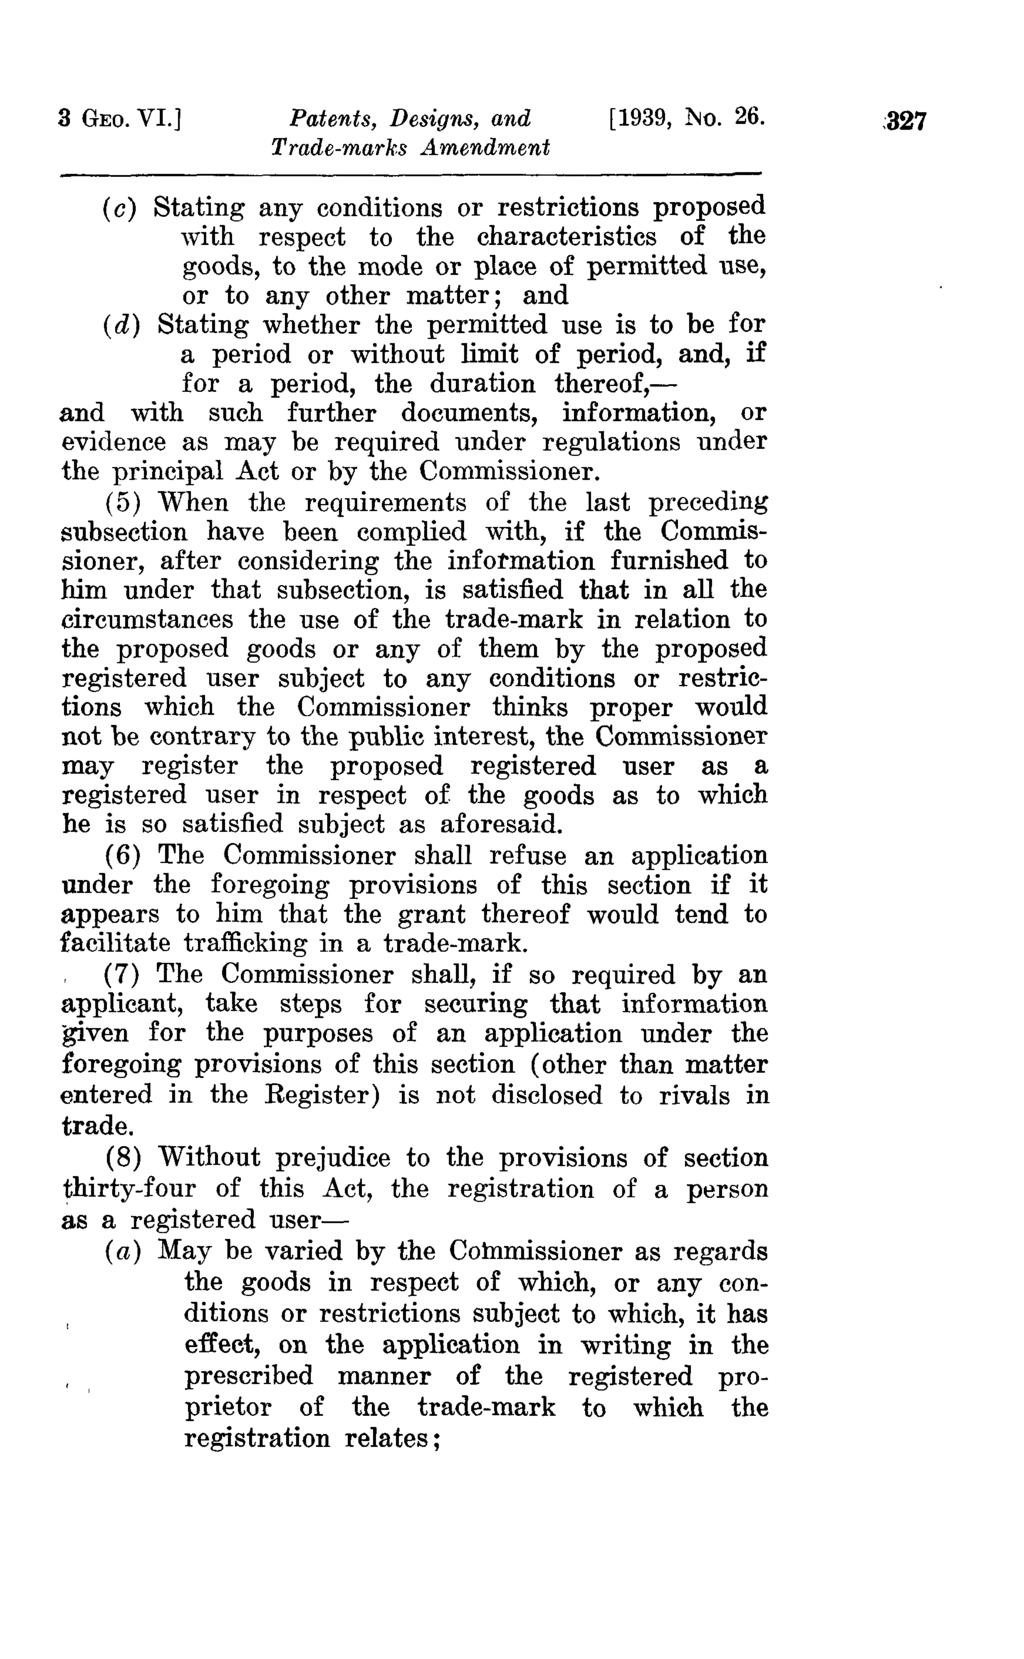 3 GEO. VI.] Patents, Designs, and [1939, :No. 26.